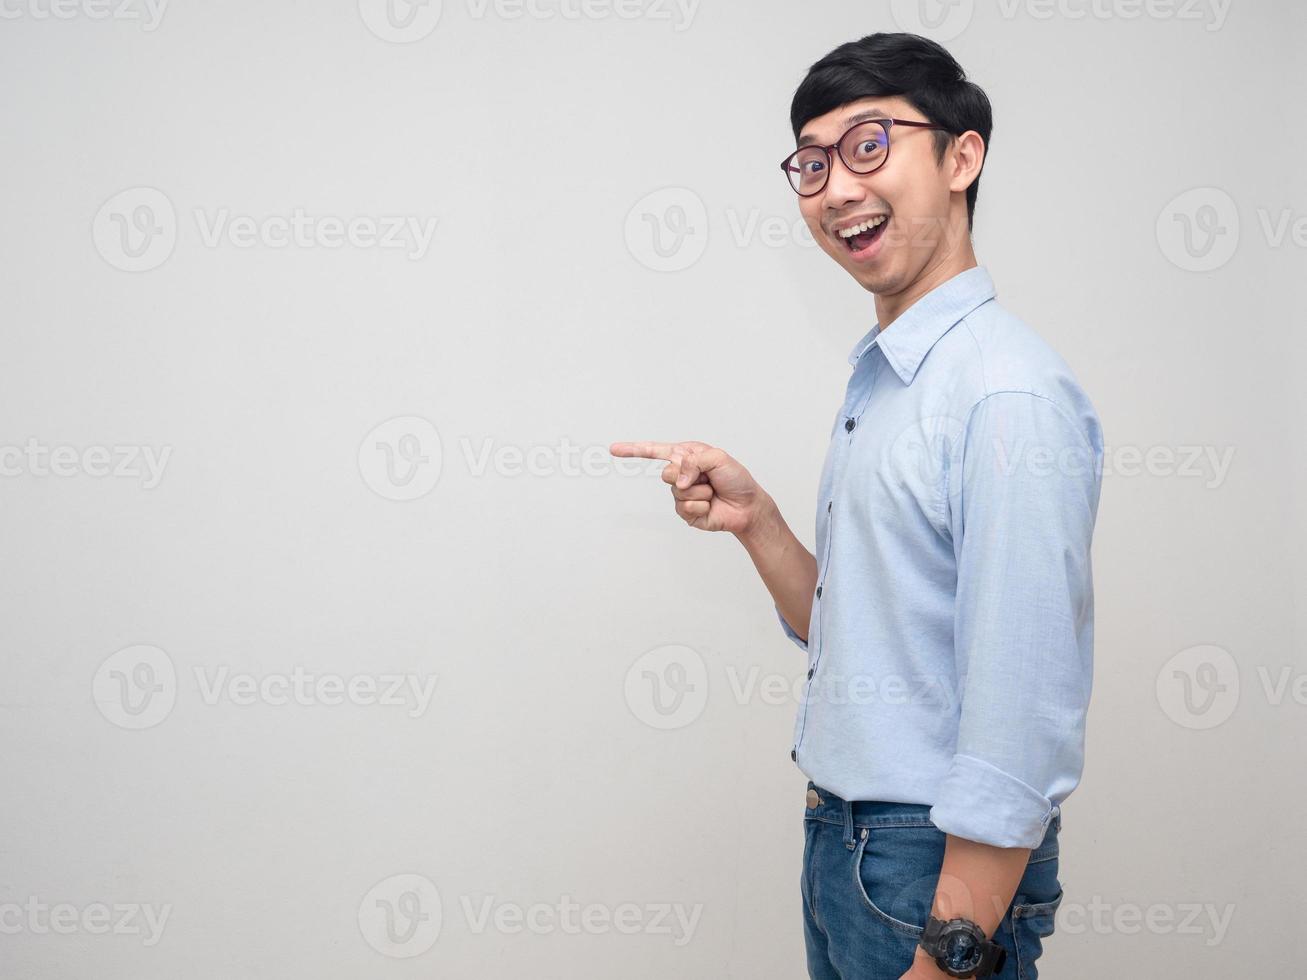 homem positivo usa óculos dedo de ponto de vista lateral no espaço da cópia foto